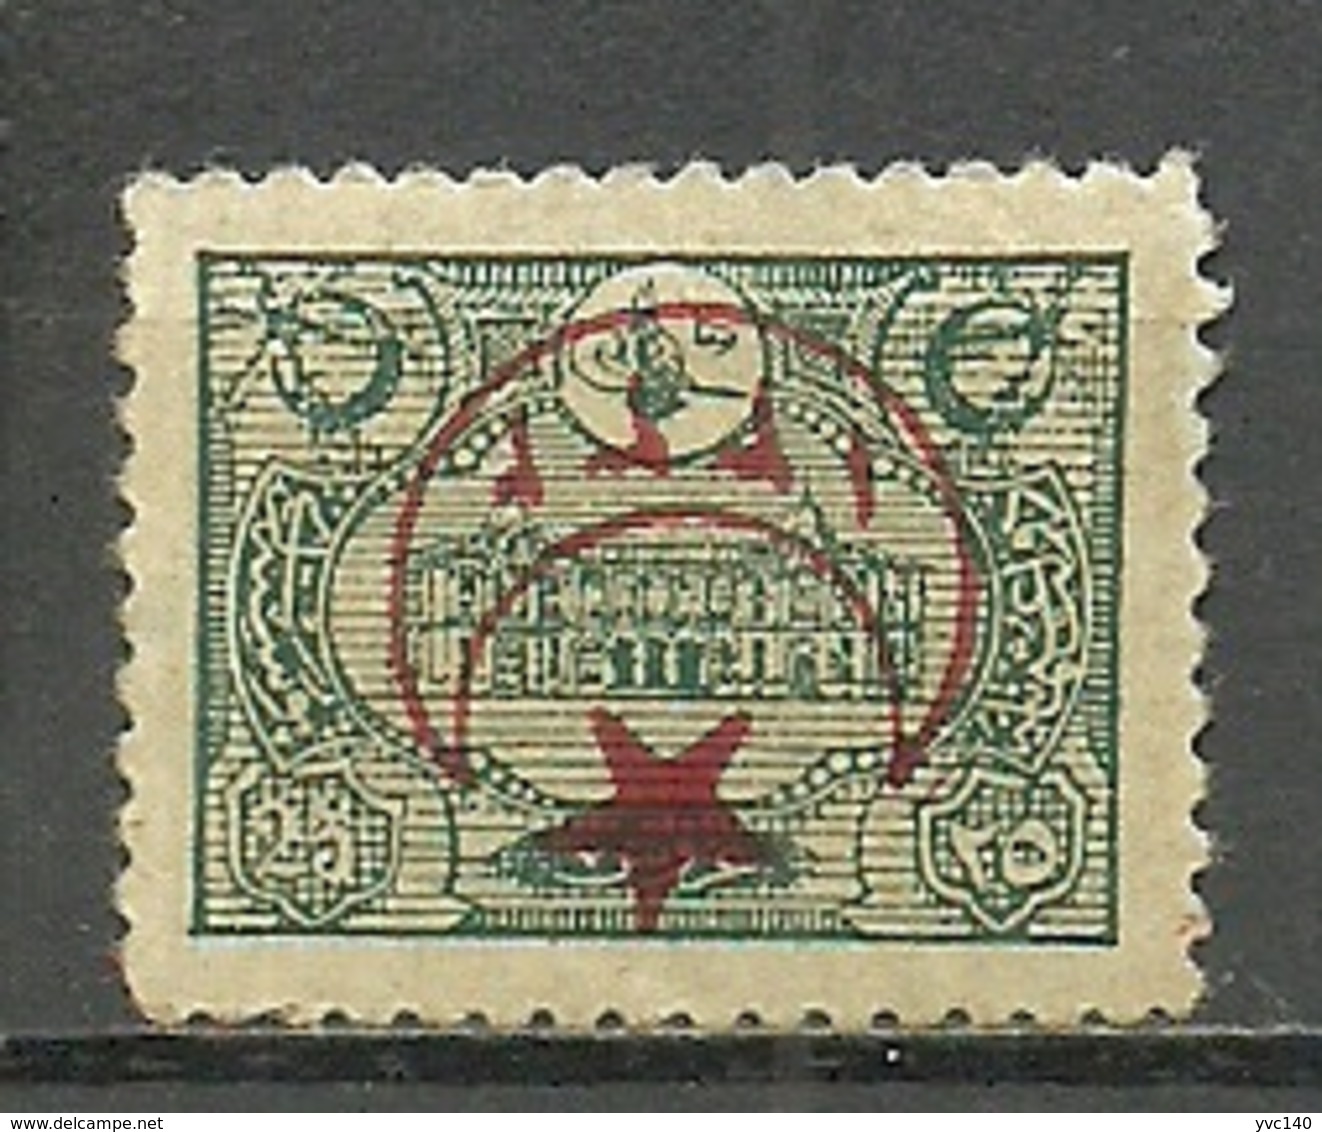 Turkey; 1916 Overprinted War Issue Stamp 25 K. ERROR "Inverted Overprint" (Signed) - Unused Stamps